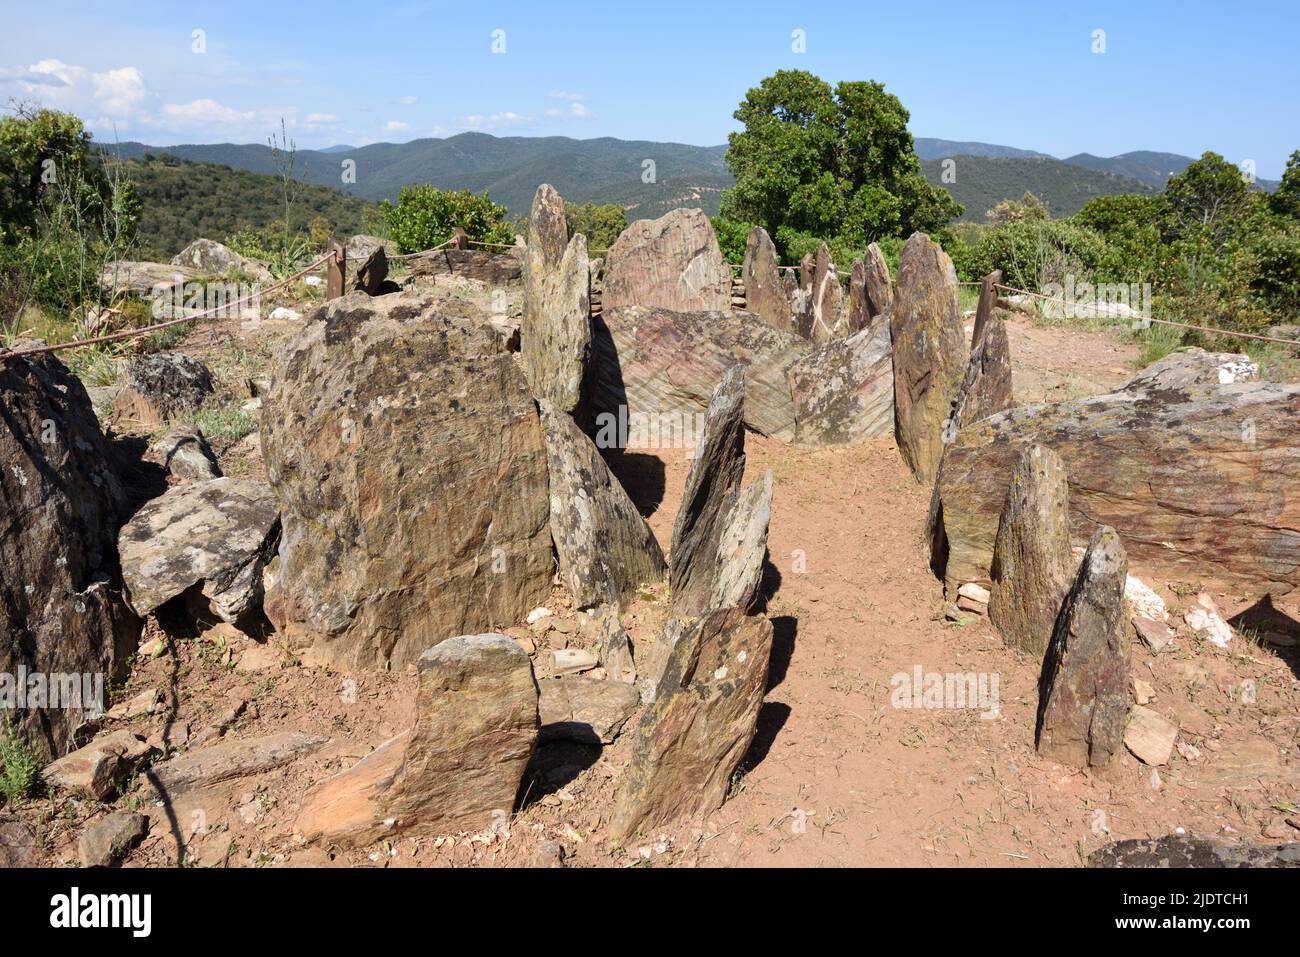 Chambre de Burial néolithique ou mégalithique, ancienne tombe ou Dolmen de Gaoutabry, la Londe-les-Maures, Var Provence France Banque D'Images